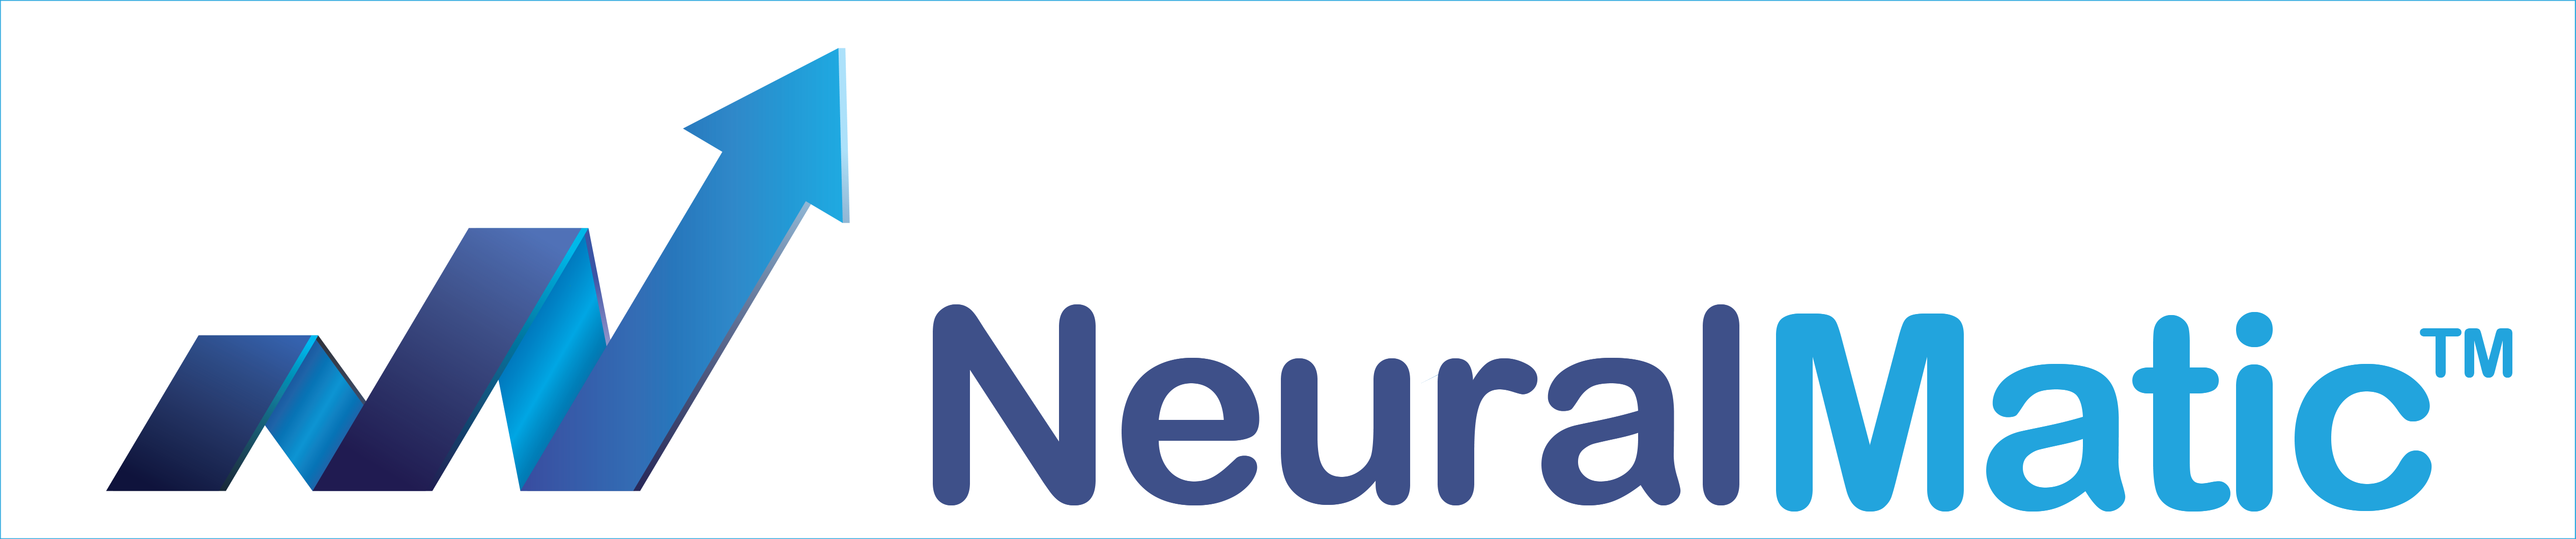 NeuralMatic Logo